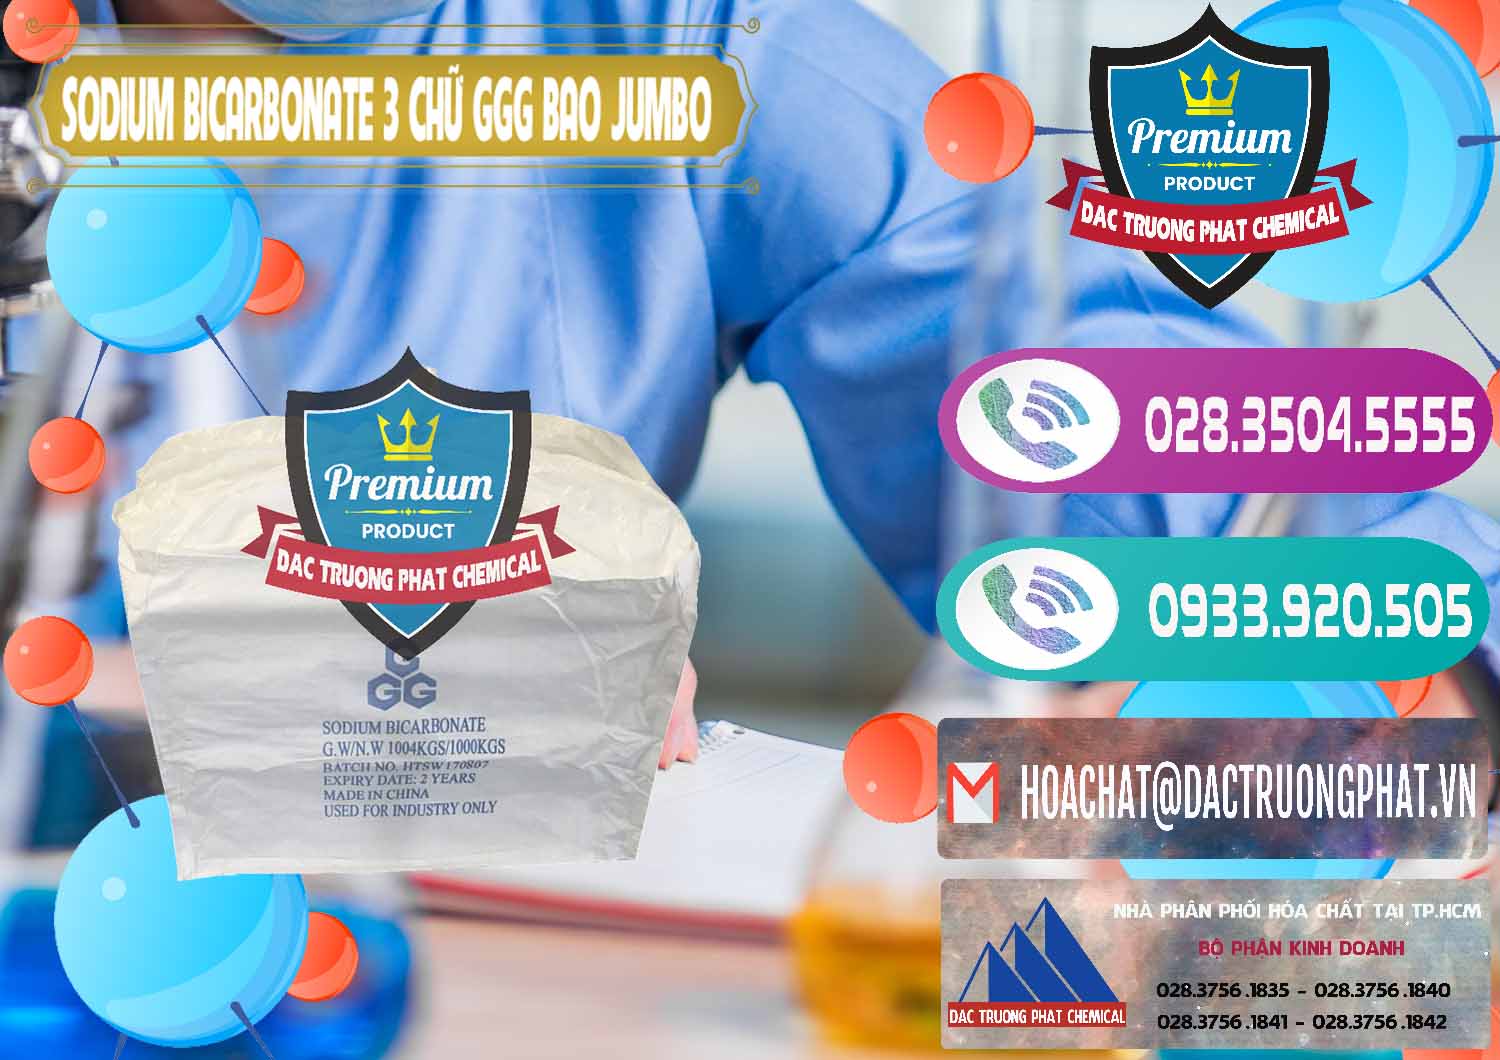 Đơn vị chuyên cung cấp ( bán ) Sodium Bicarbonate – Bicar NaHCO3 Food Grade 3 Chữ GGG Bao Jumbo ( Bành ) Trung Quốc China - 0260 - Nhập khẩu & phân phối hóa chất tại TP.HCM - hoachatxulynuoc.com